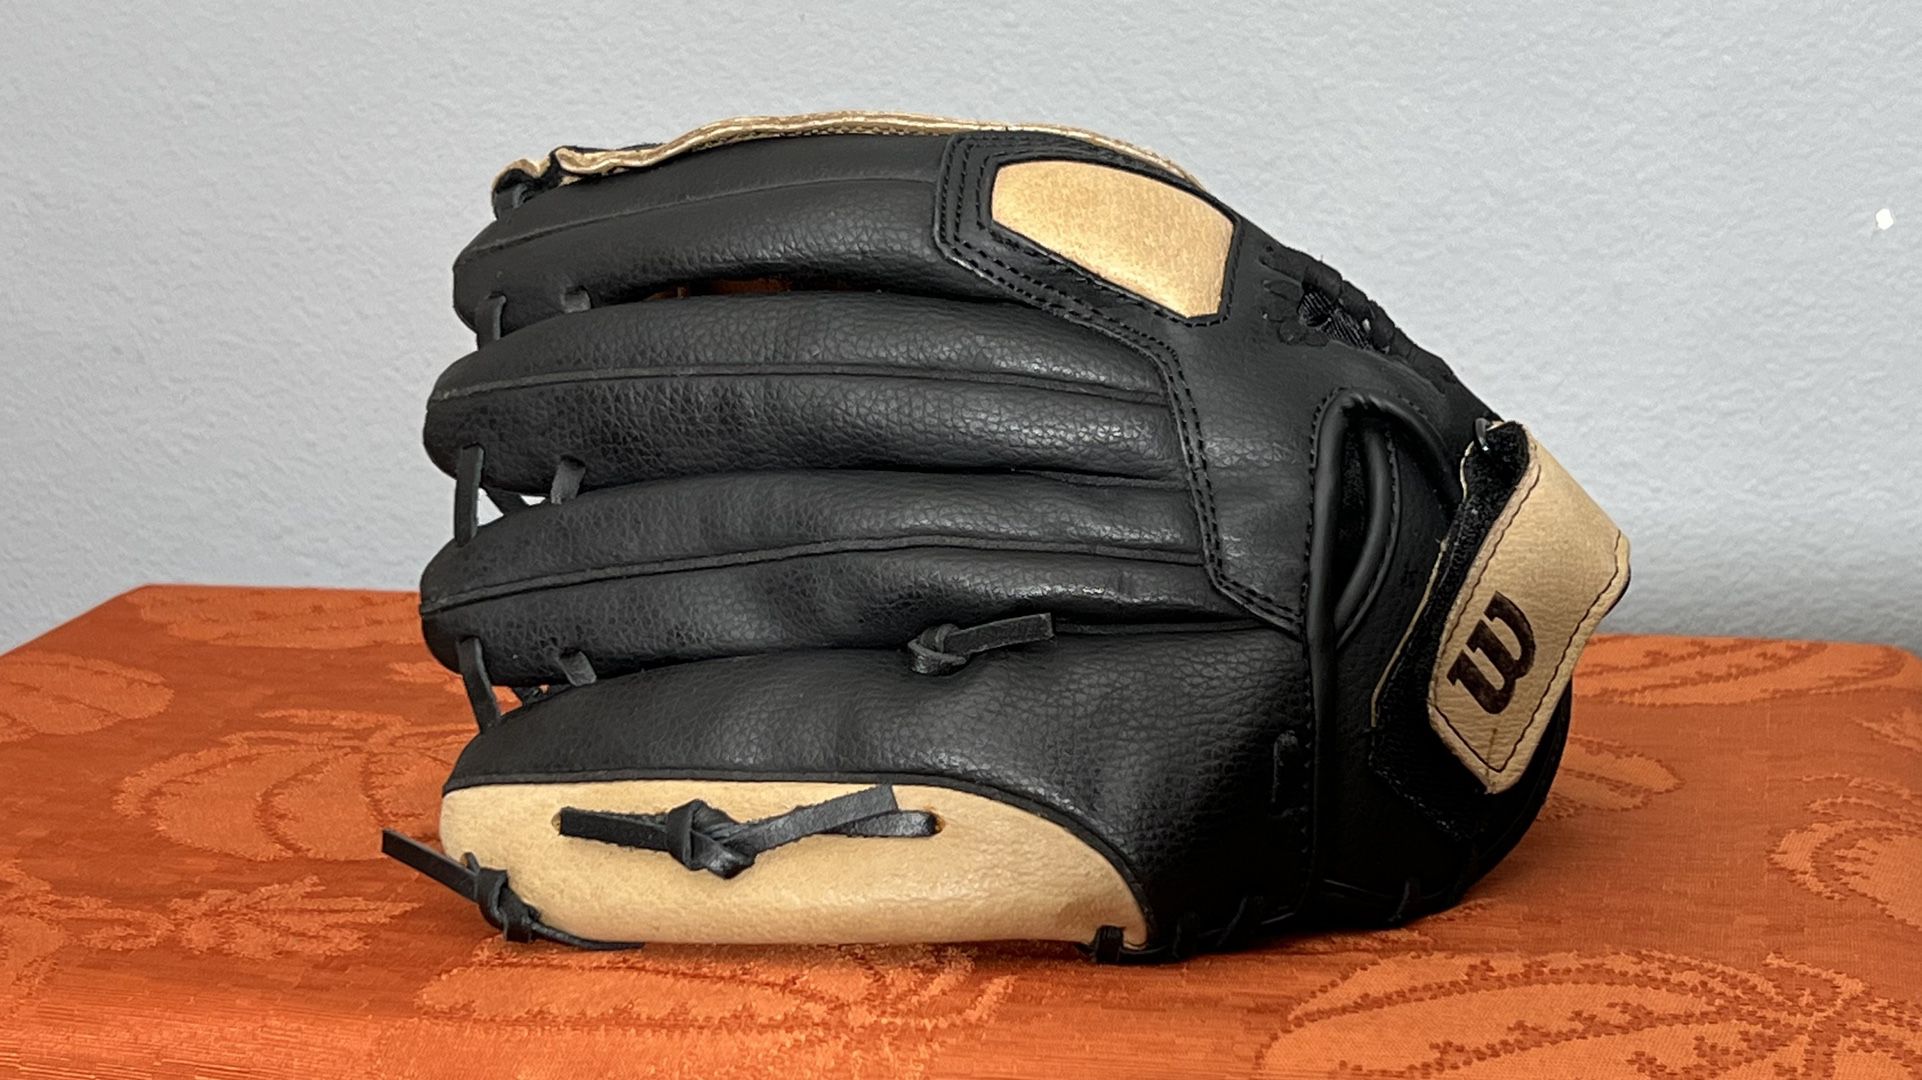 Wilson A360 Baseball Glove